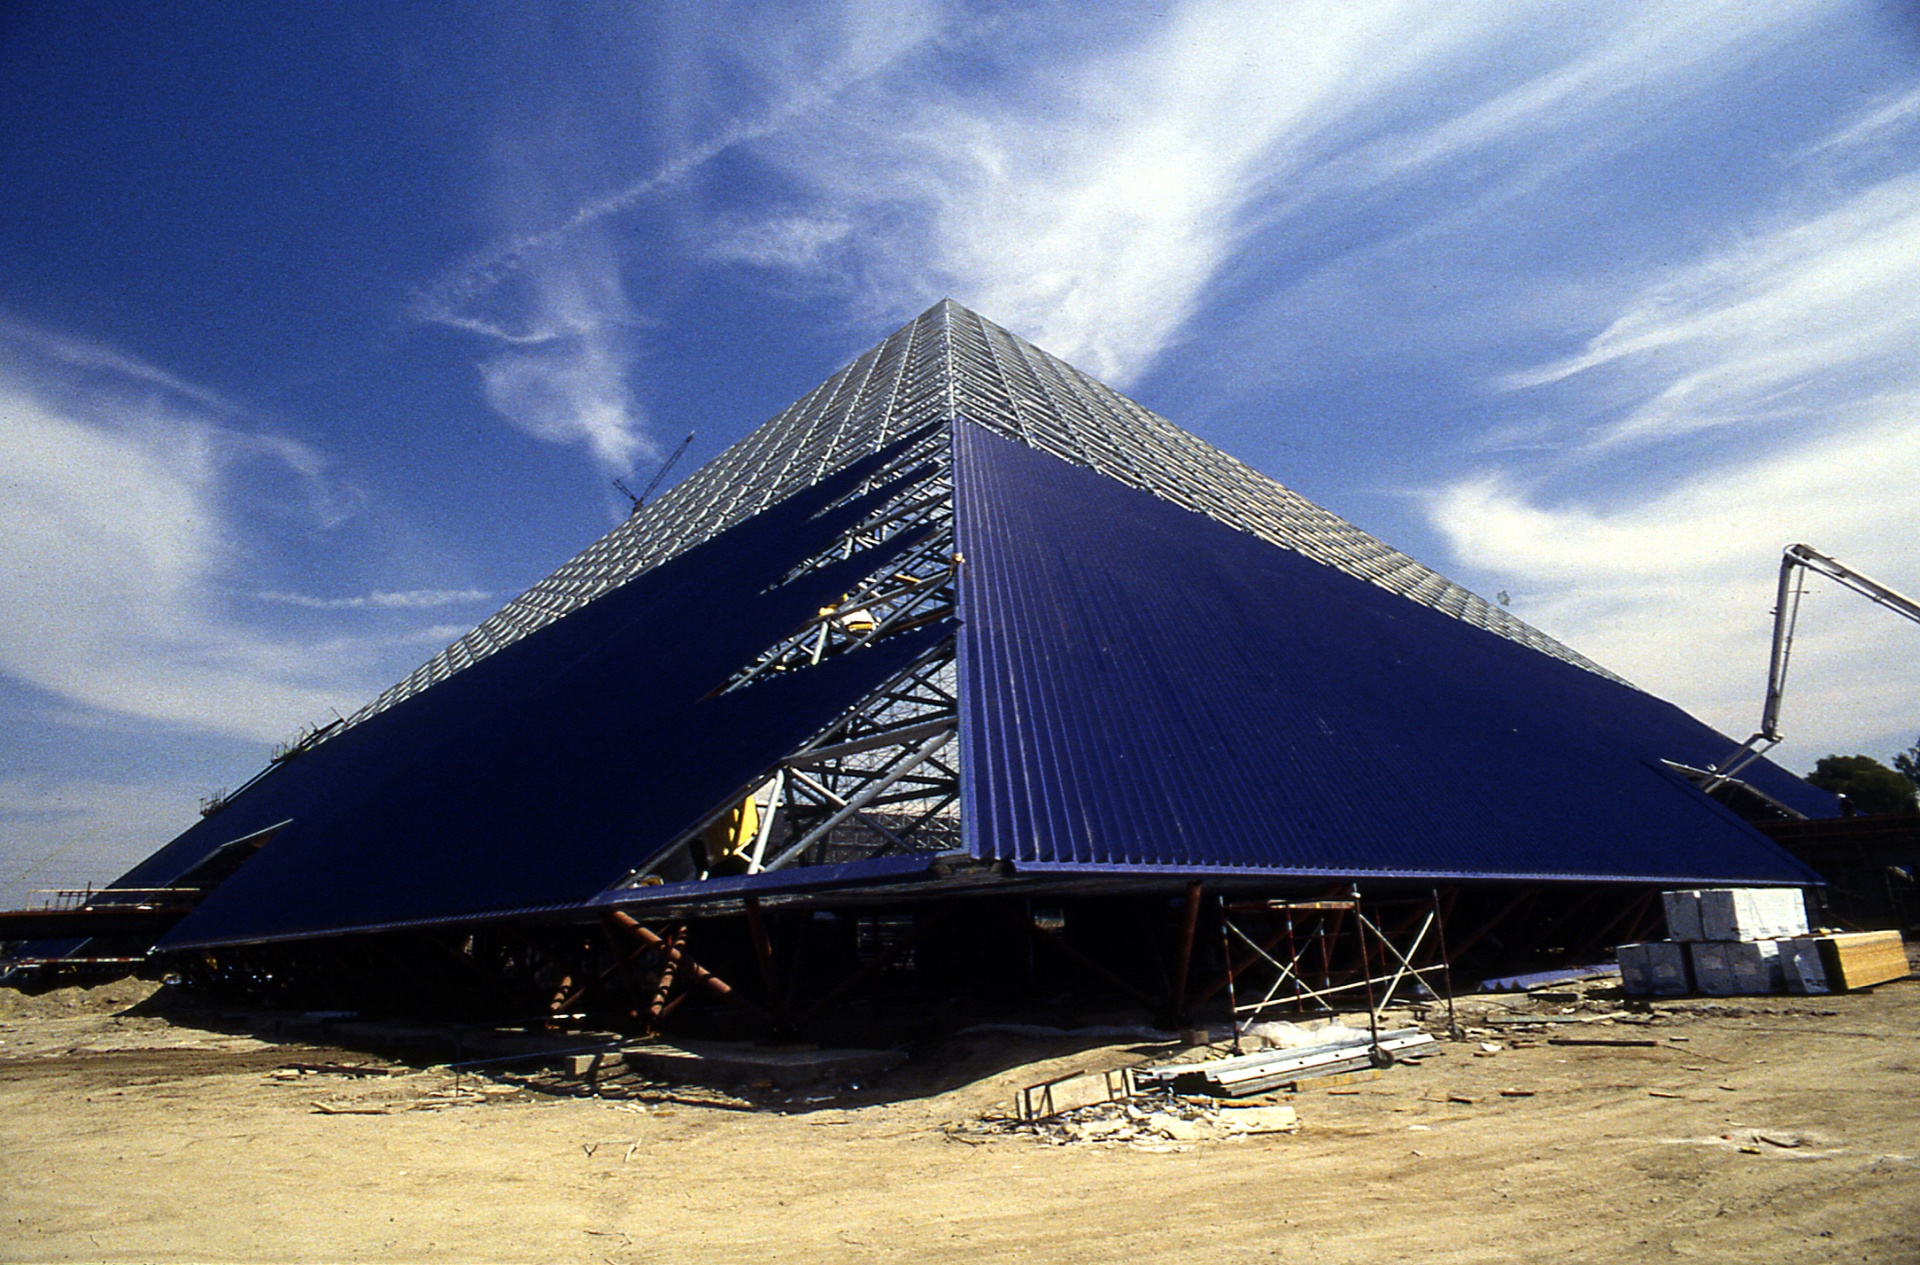 The pyramid I ncosntructionn